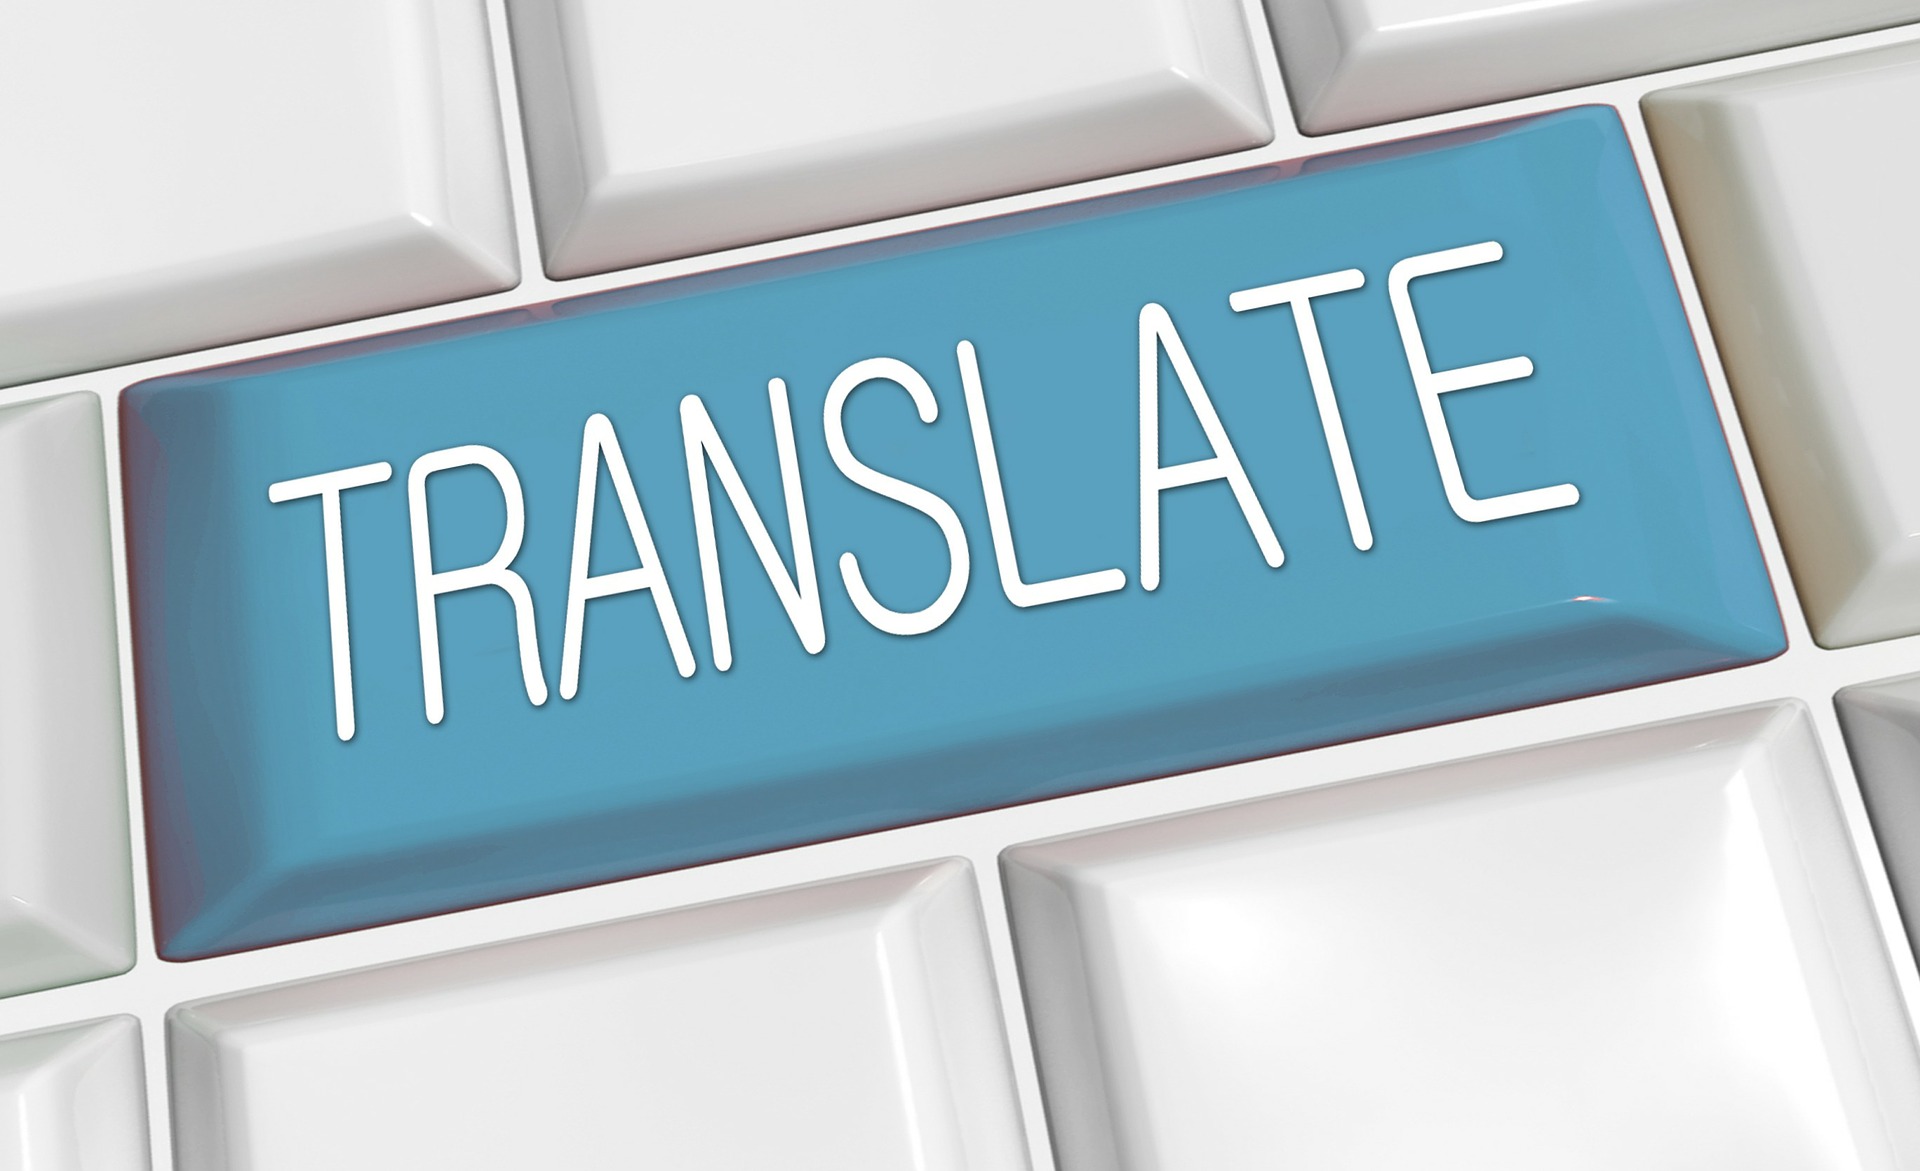 Je bekijkt nu <strong>Online vertalen wat zijn de opties?</strong>